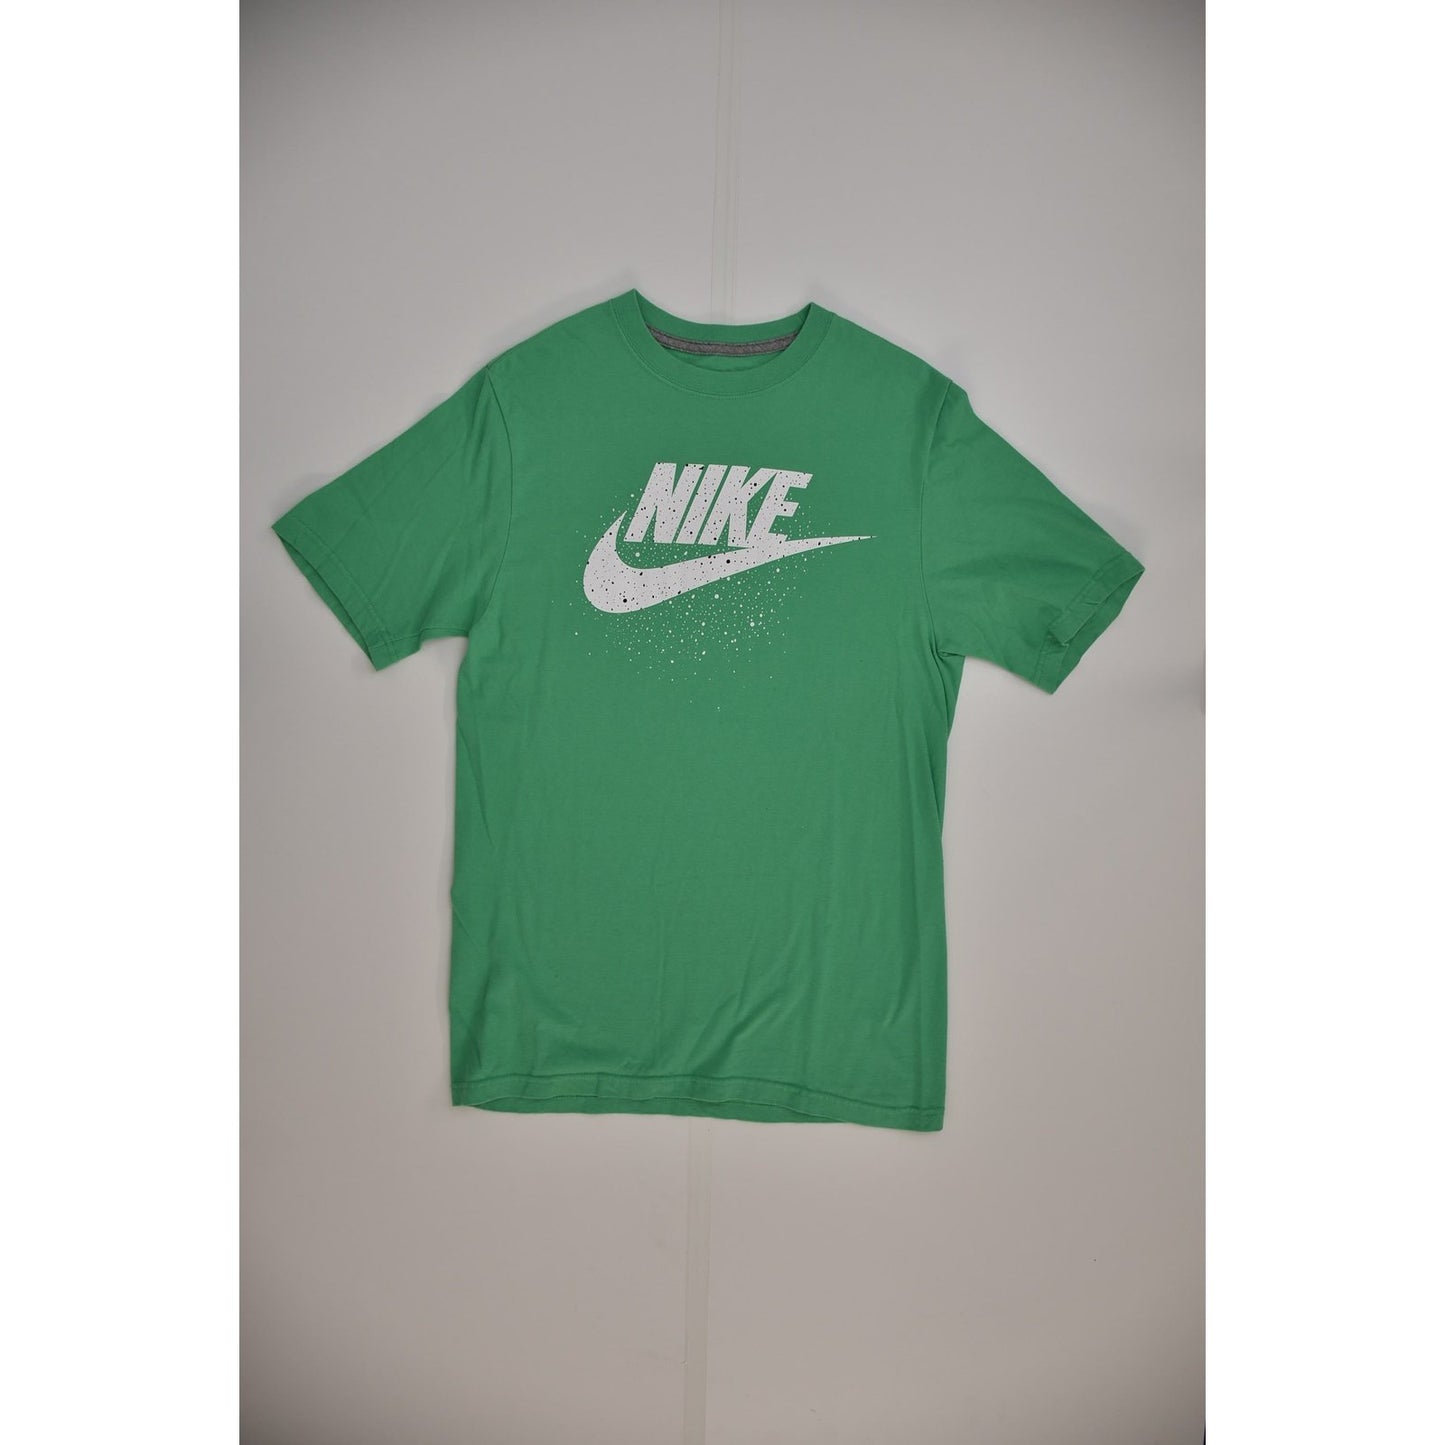 Nike Green T-shirt (S)